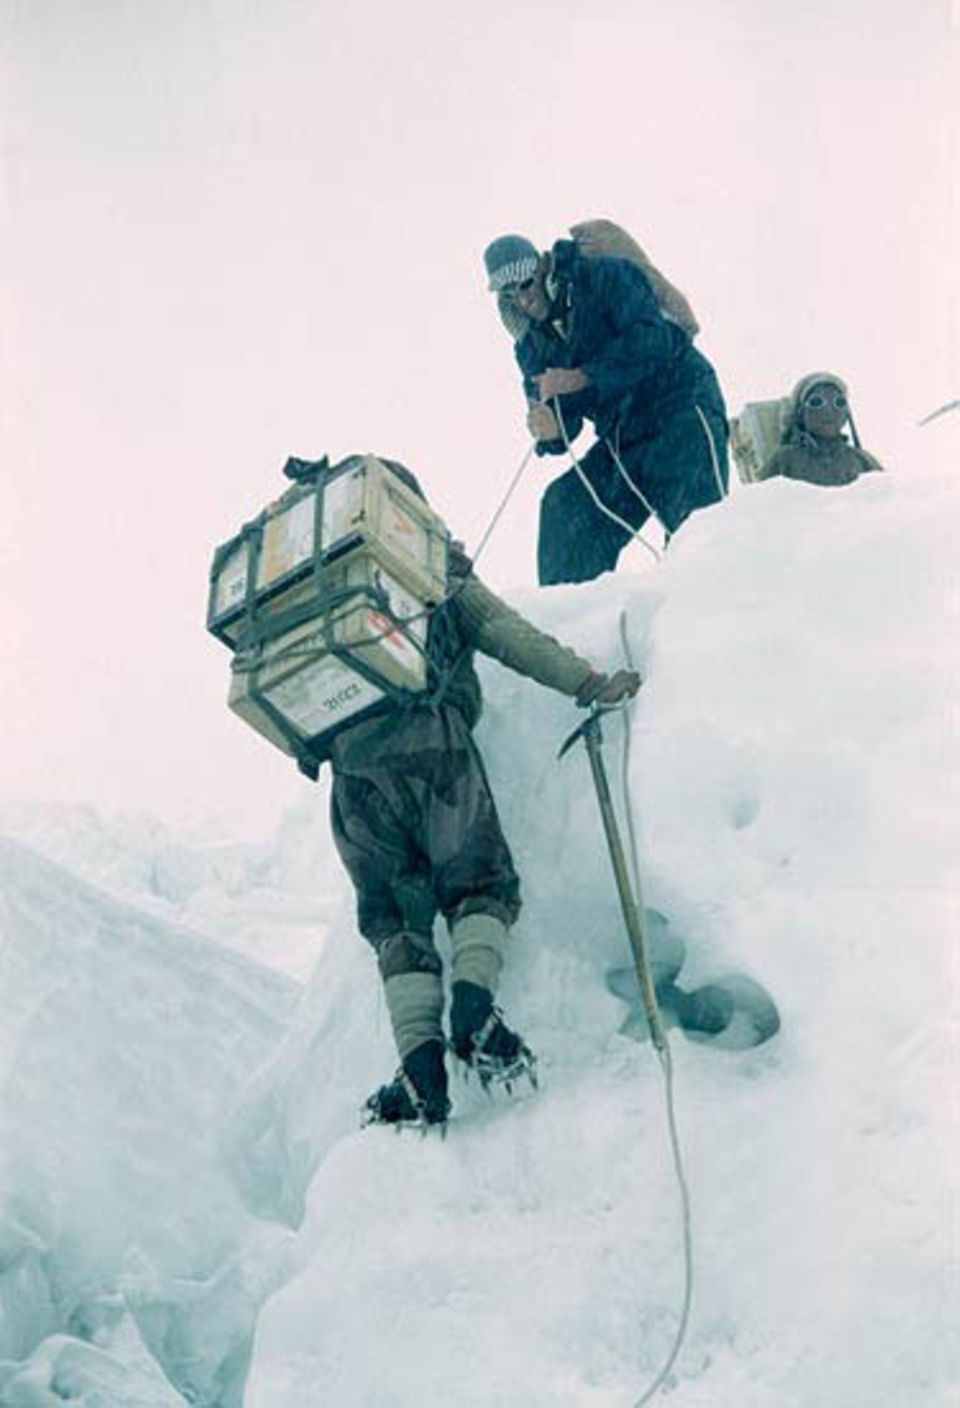 Menschen vom Volk der Sherpa halfen den Bergsteigern beim Tragen der Lasten auf dem Weg zum Gipfel